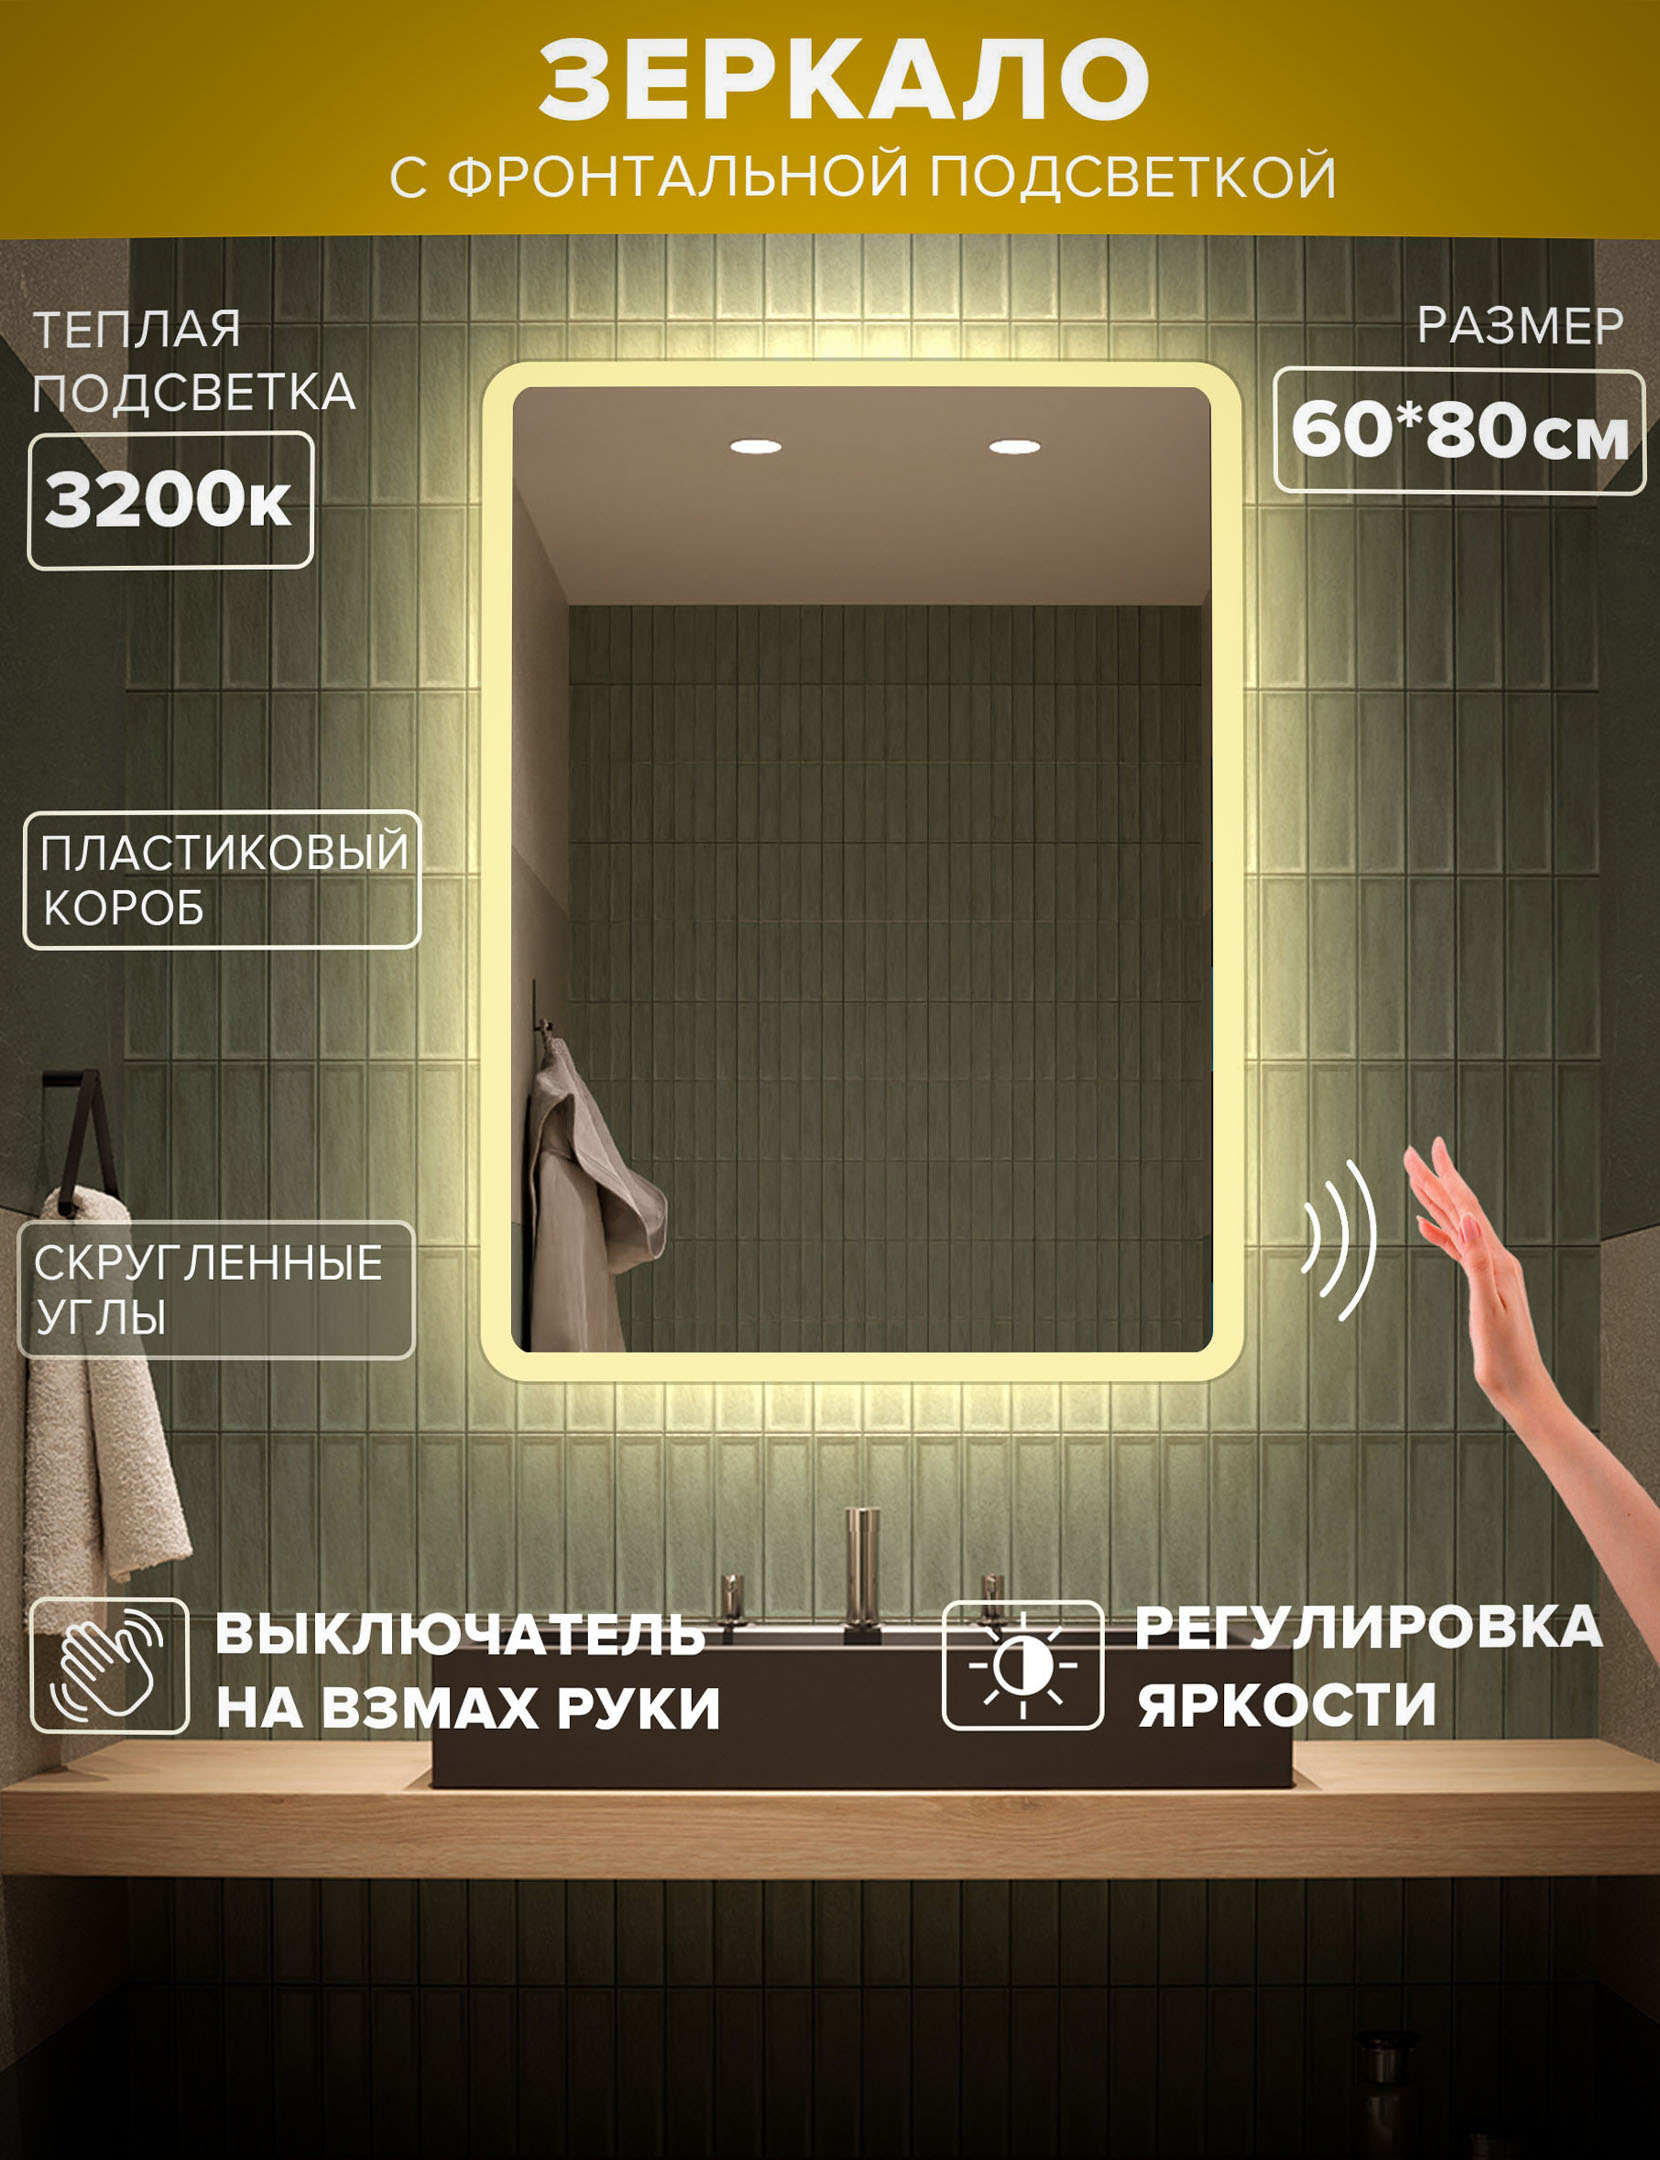 Зеркало для ванной Alfa Mirrors теплая подсветка 3200К, прямоугольное 60*80 см, MDi-68Vzt